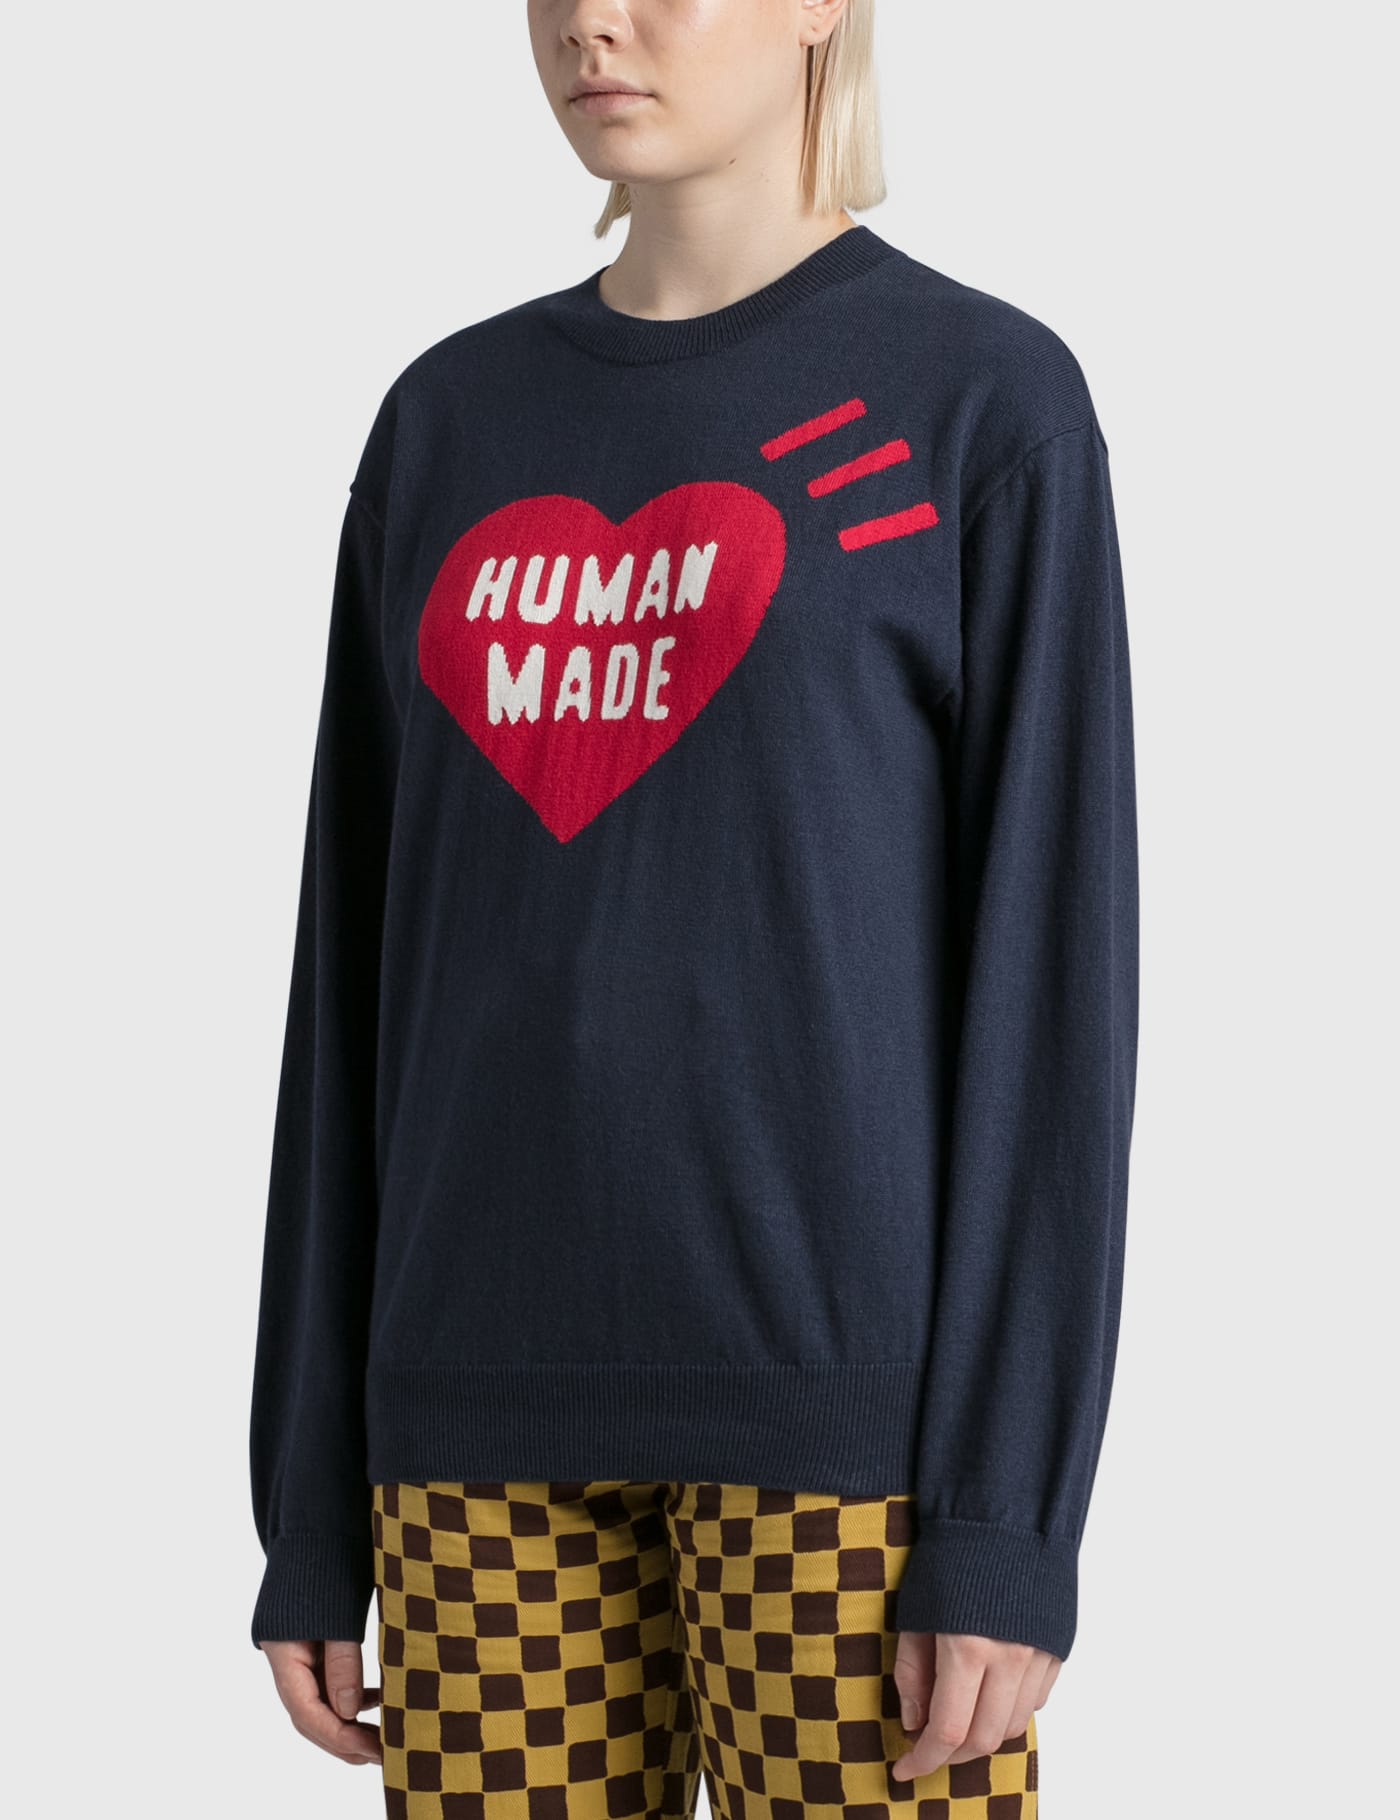 Human Made - ハート ニット セーター | HBX - ハイプビースト(Hypebeast)が厳選したグローバルファッション&ライフスタイル